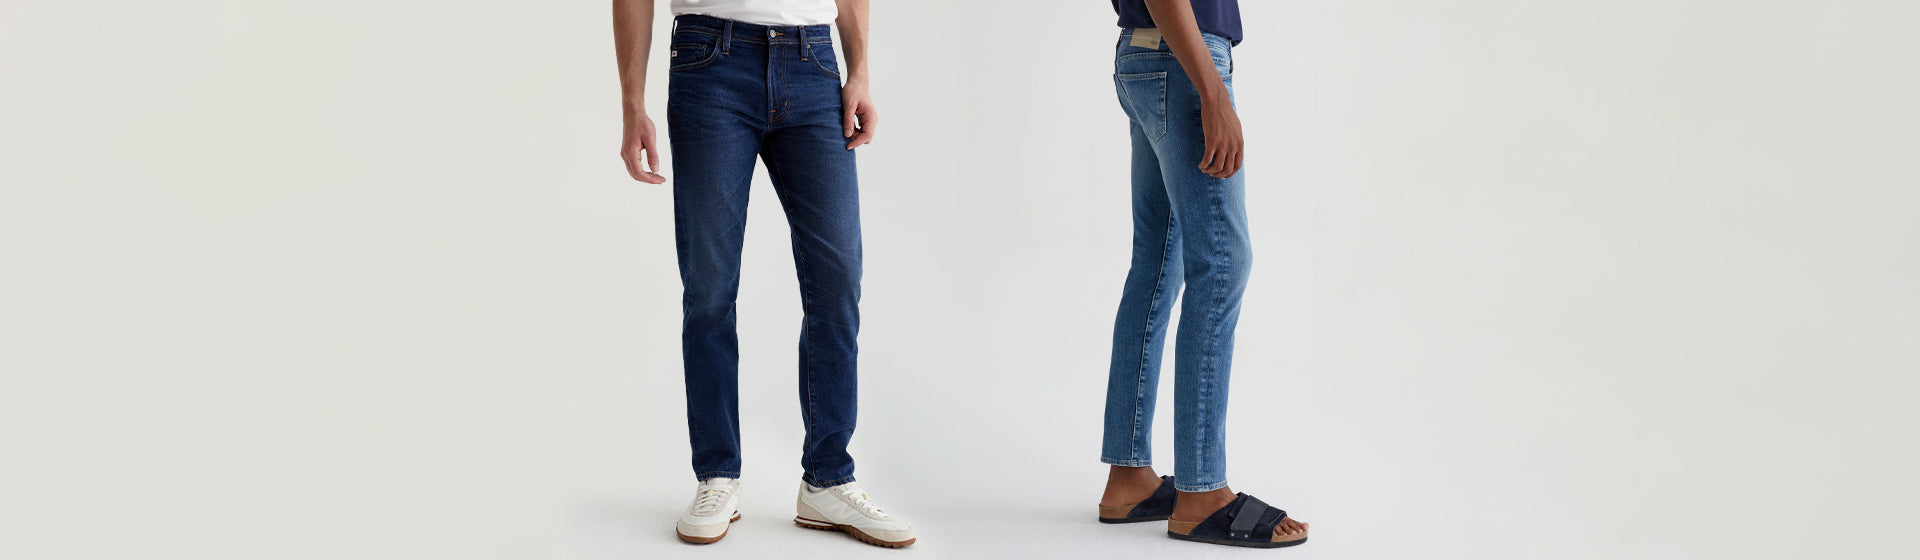 Men's Skinny Leg Jeans